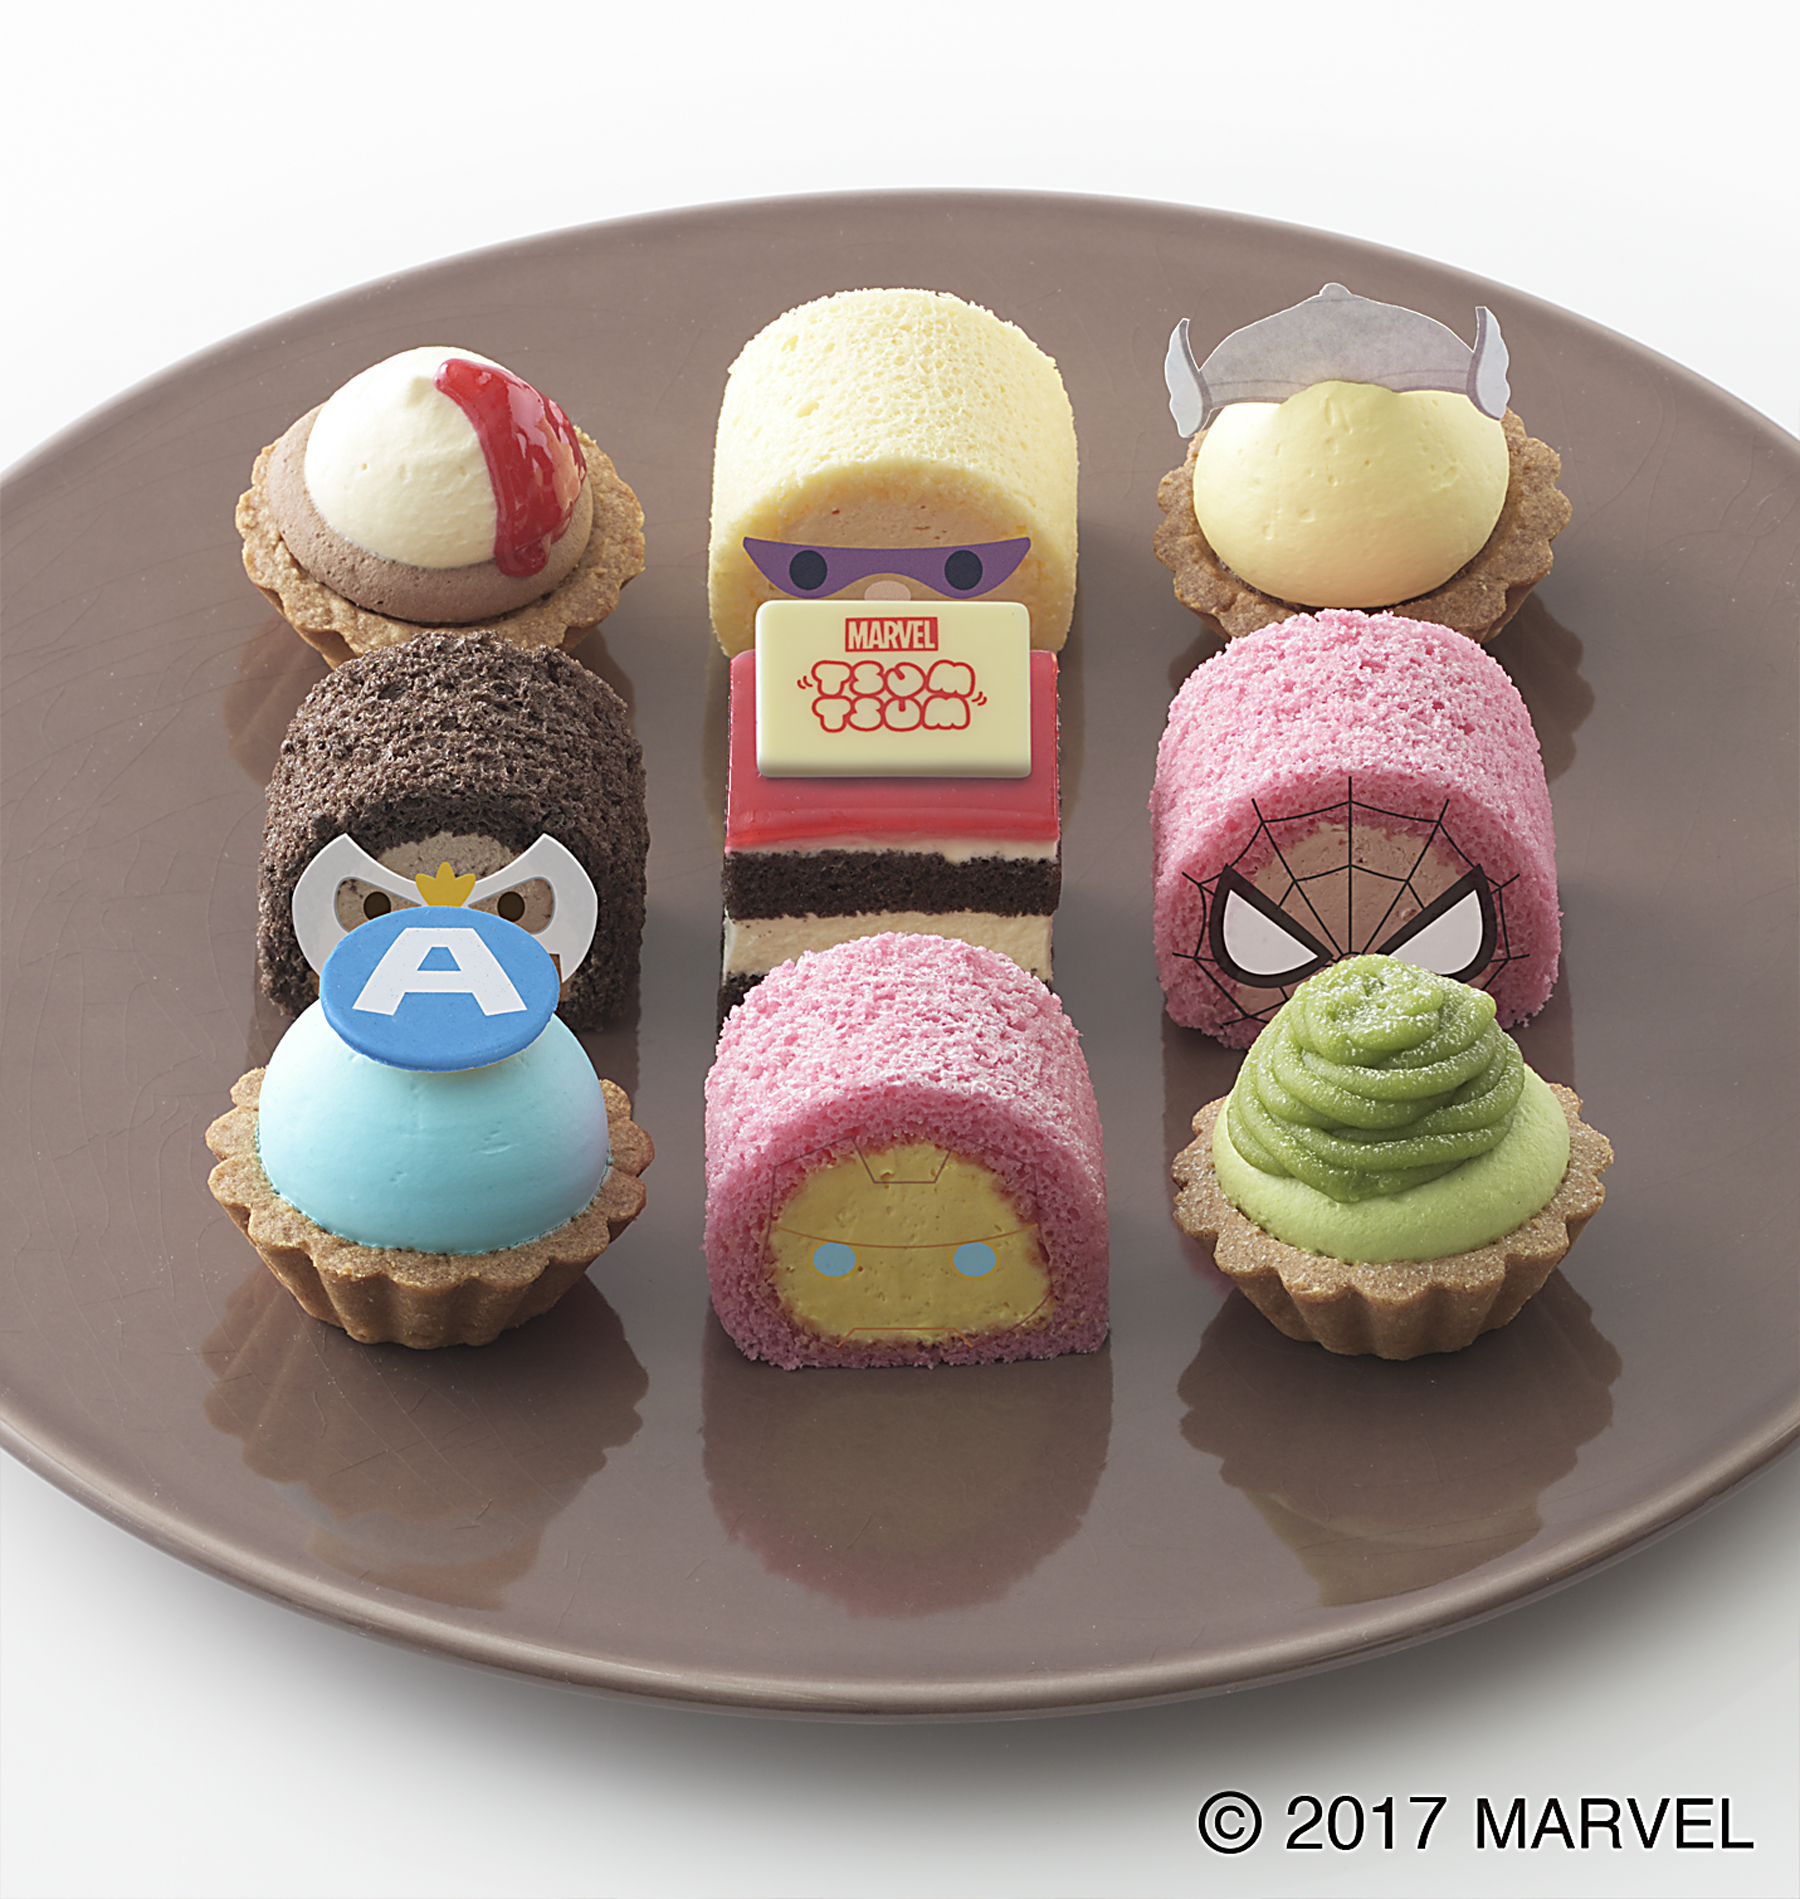 1月13日より マーベル ツムツム デザインのプチケーキセットを期間限定販売 株式会社銀座コージーコーナーのプレスリリース